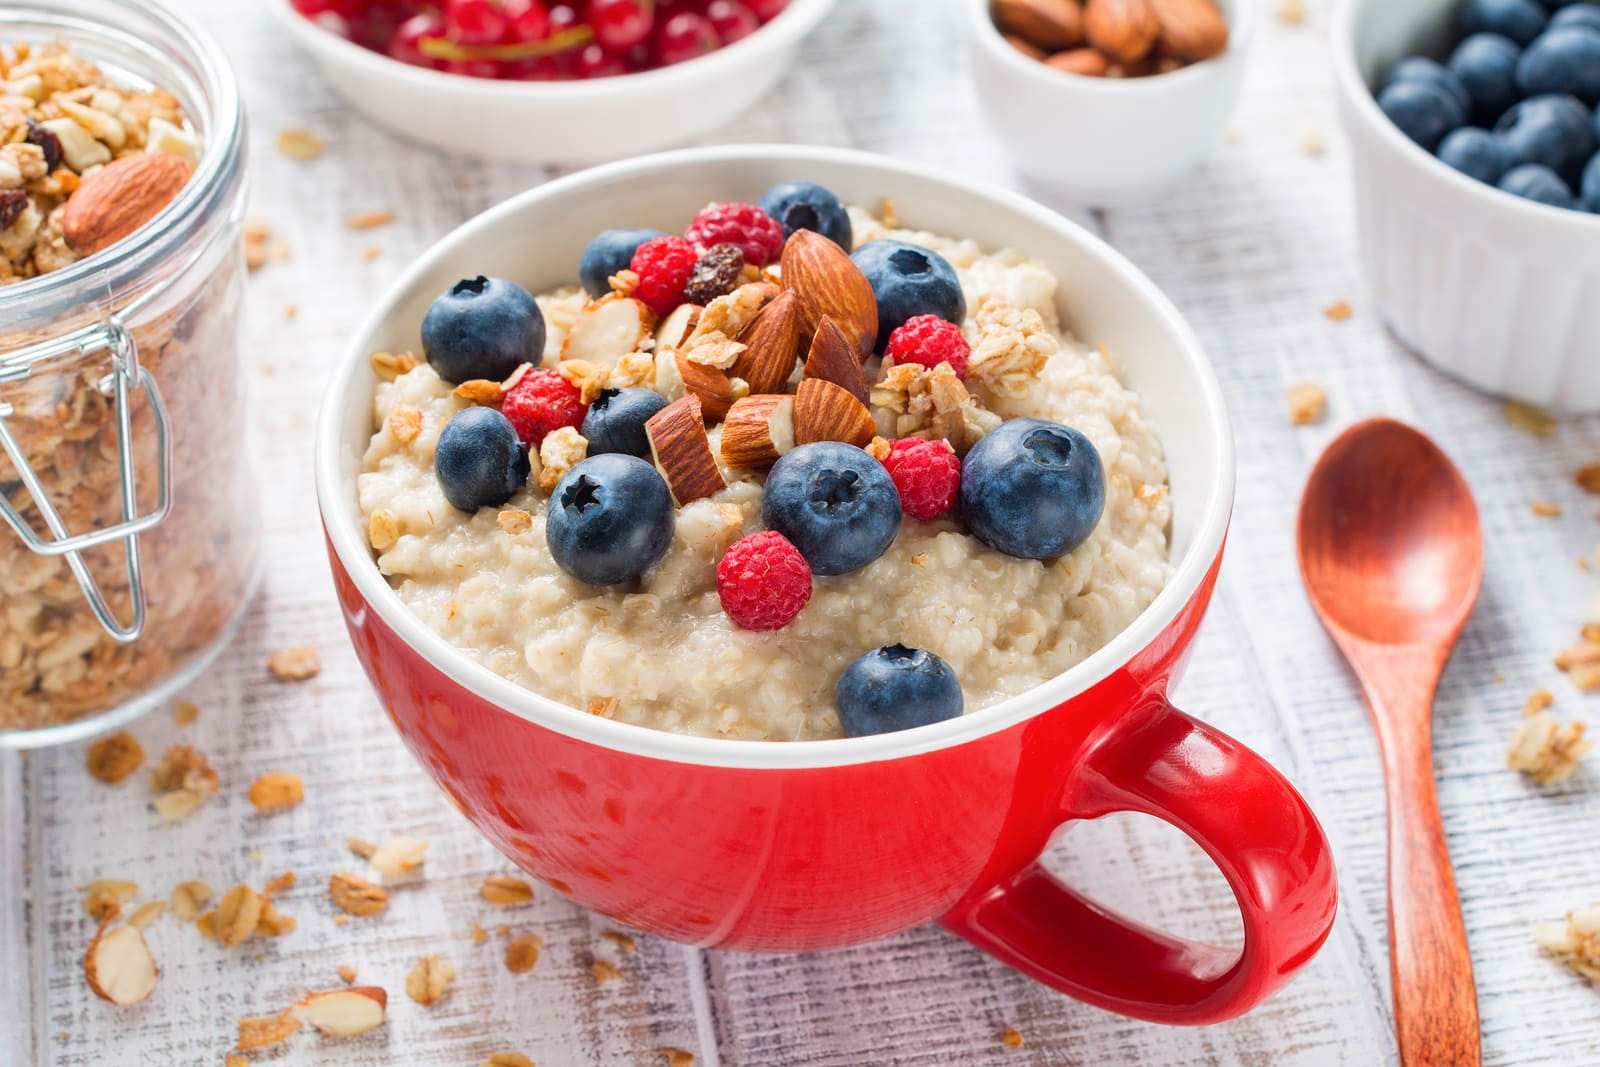 śniadanie co jeść na śniadanie ile kalorii powinno mieć śniadanie?